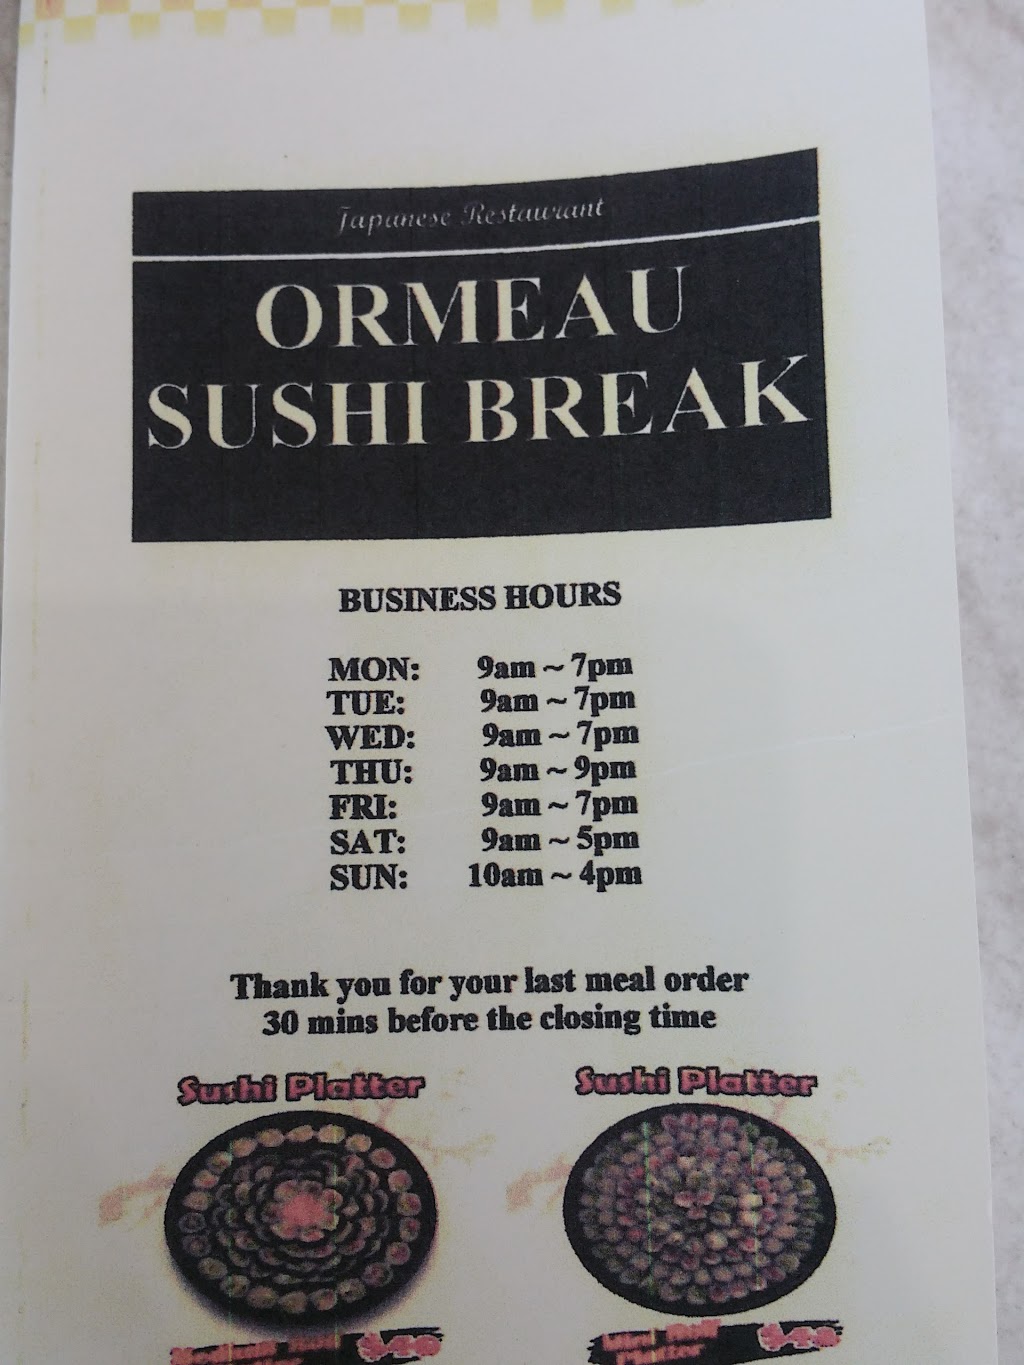 Ormeau Sushi Break | restaurant | 21 Peachey Rd, Ormeau QLD 4208, Australia | 0415571556 OR +61 415 571 556